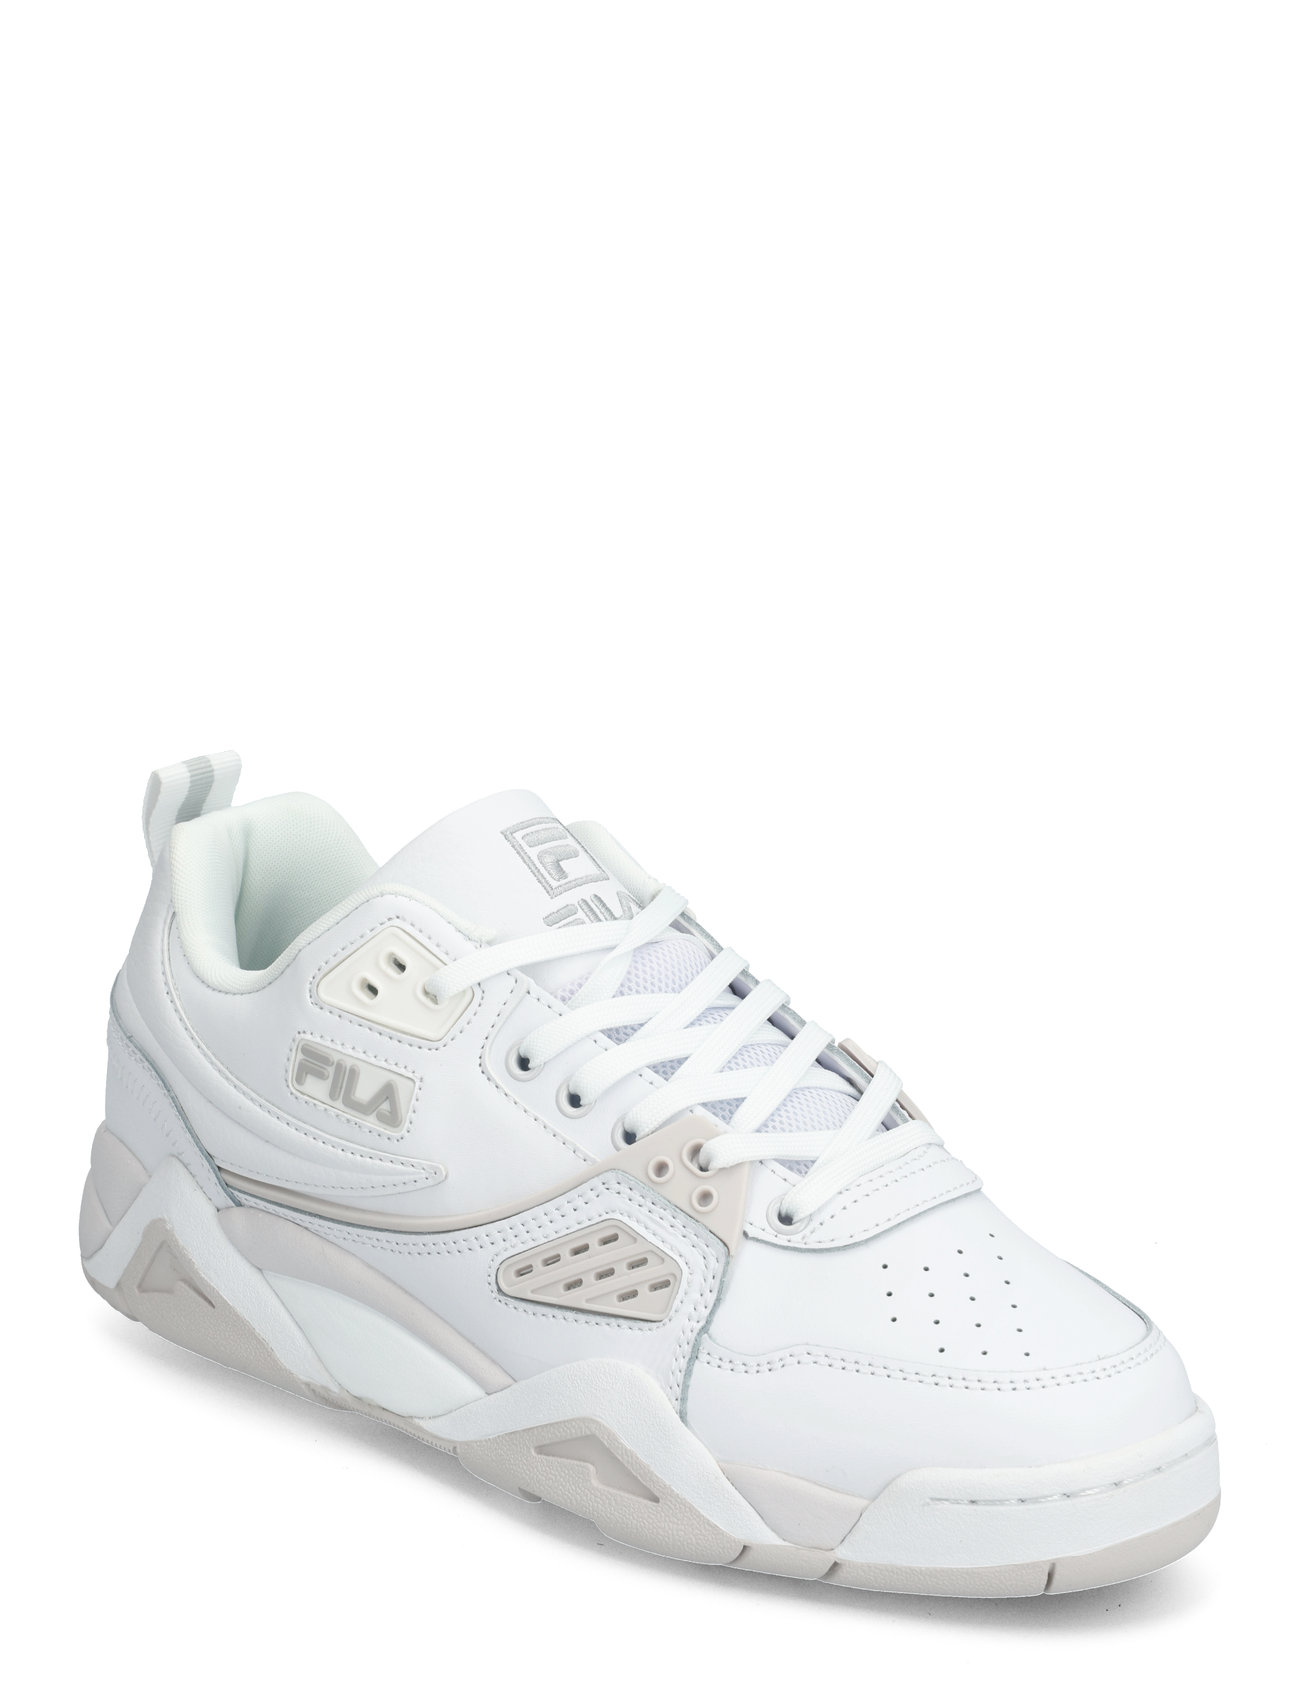 Fila Casim Sport Sneakers Low-top Sneakers White FILA